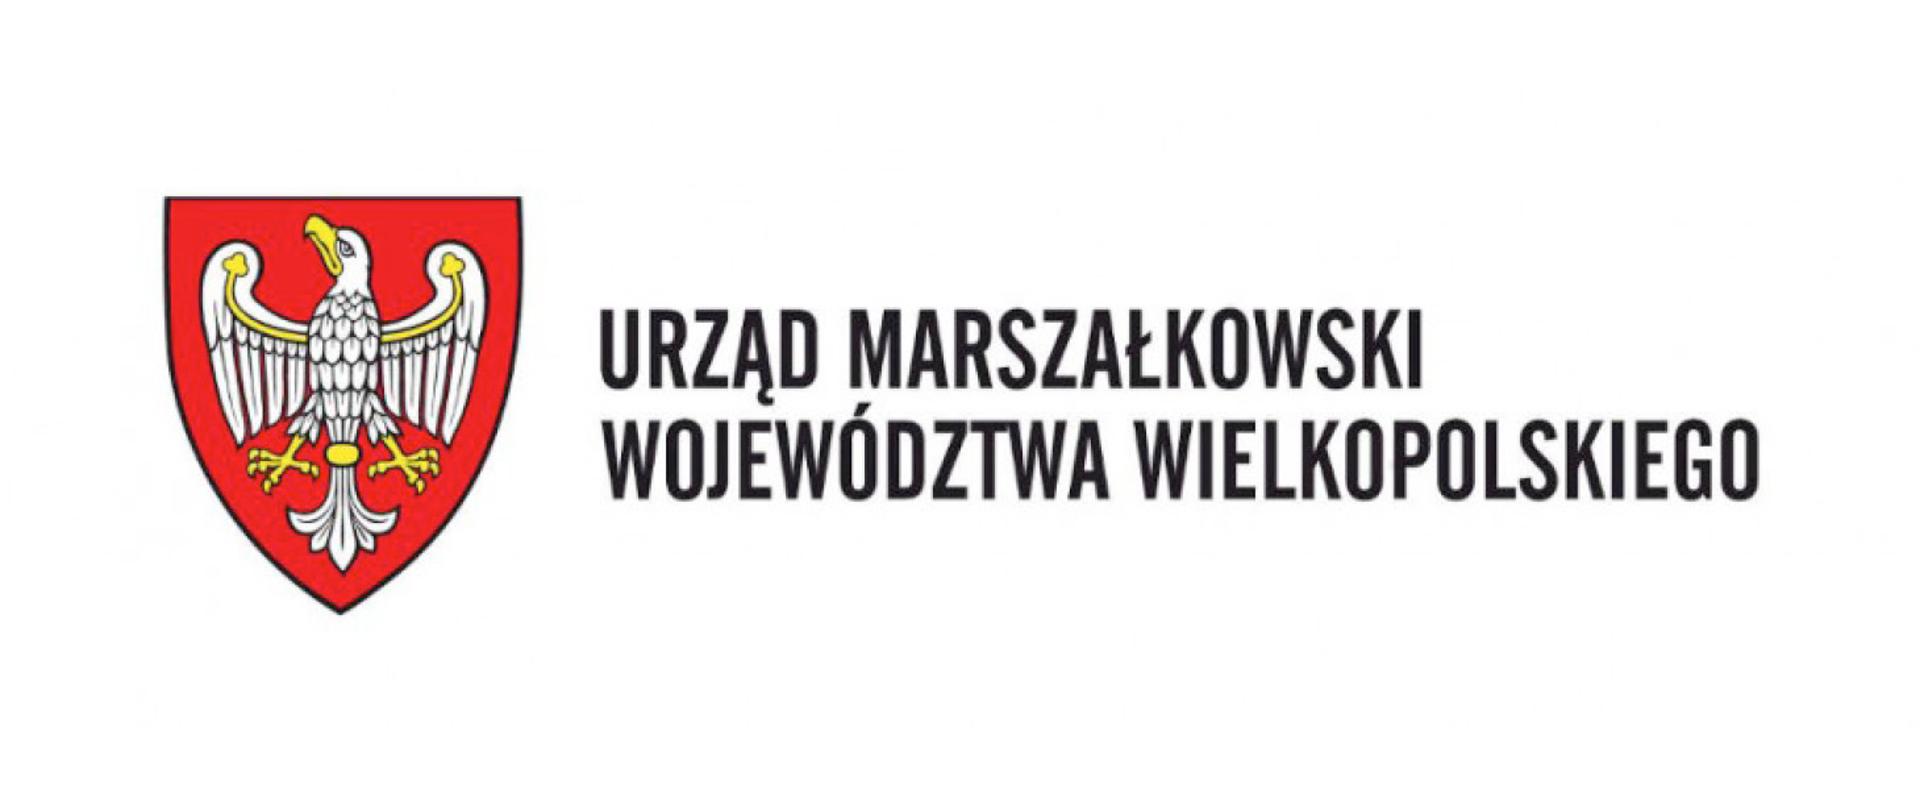 Urząd Marszałkowski Województwa Wielkopolskiego 